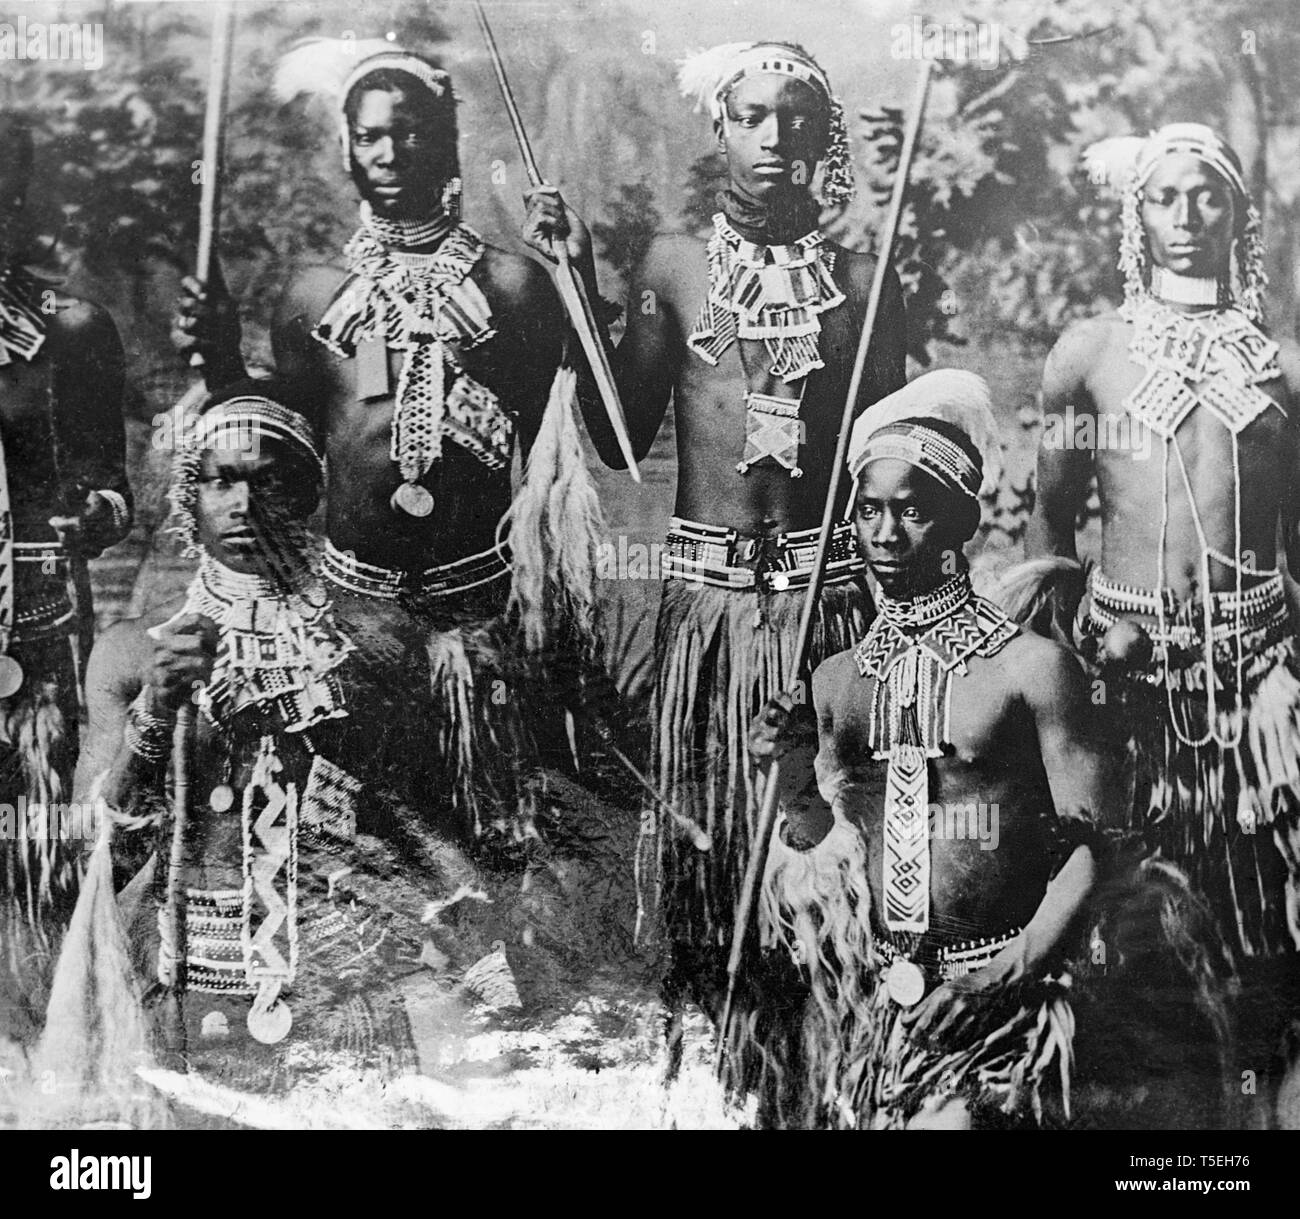 Ein Foto von Zulu Krieger während des Burenkriegs im Südlichen Afrika. Stockfoto